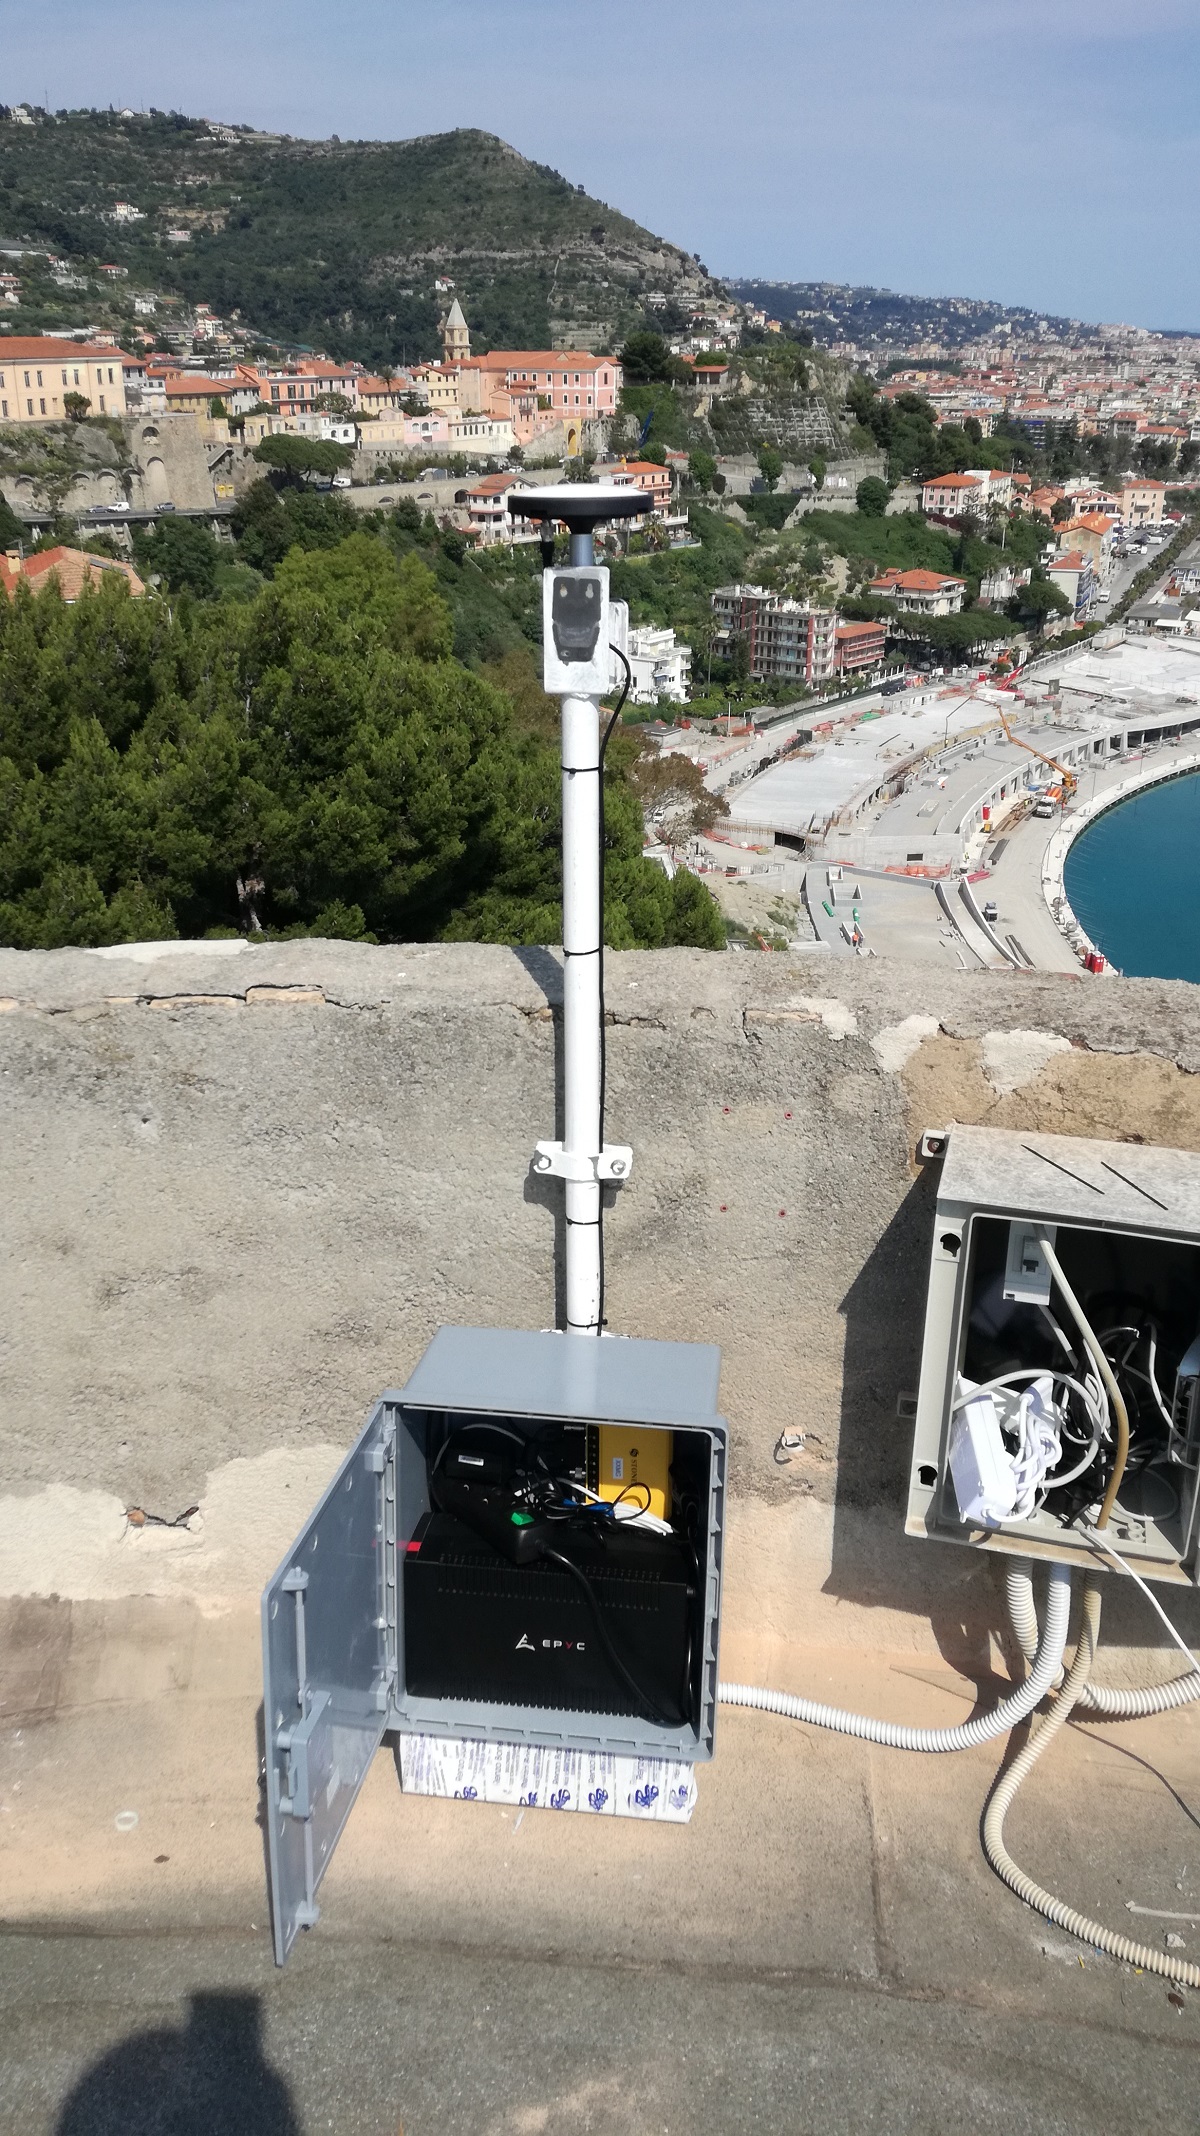 Stazioni GNSS a basso costo per il calcolo del vapore acqueo in atmosfera: installazione a Ventimiglia